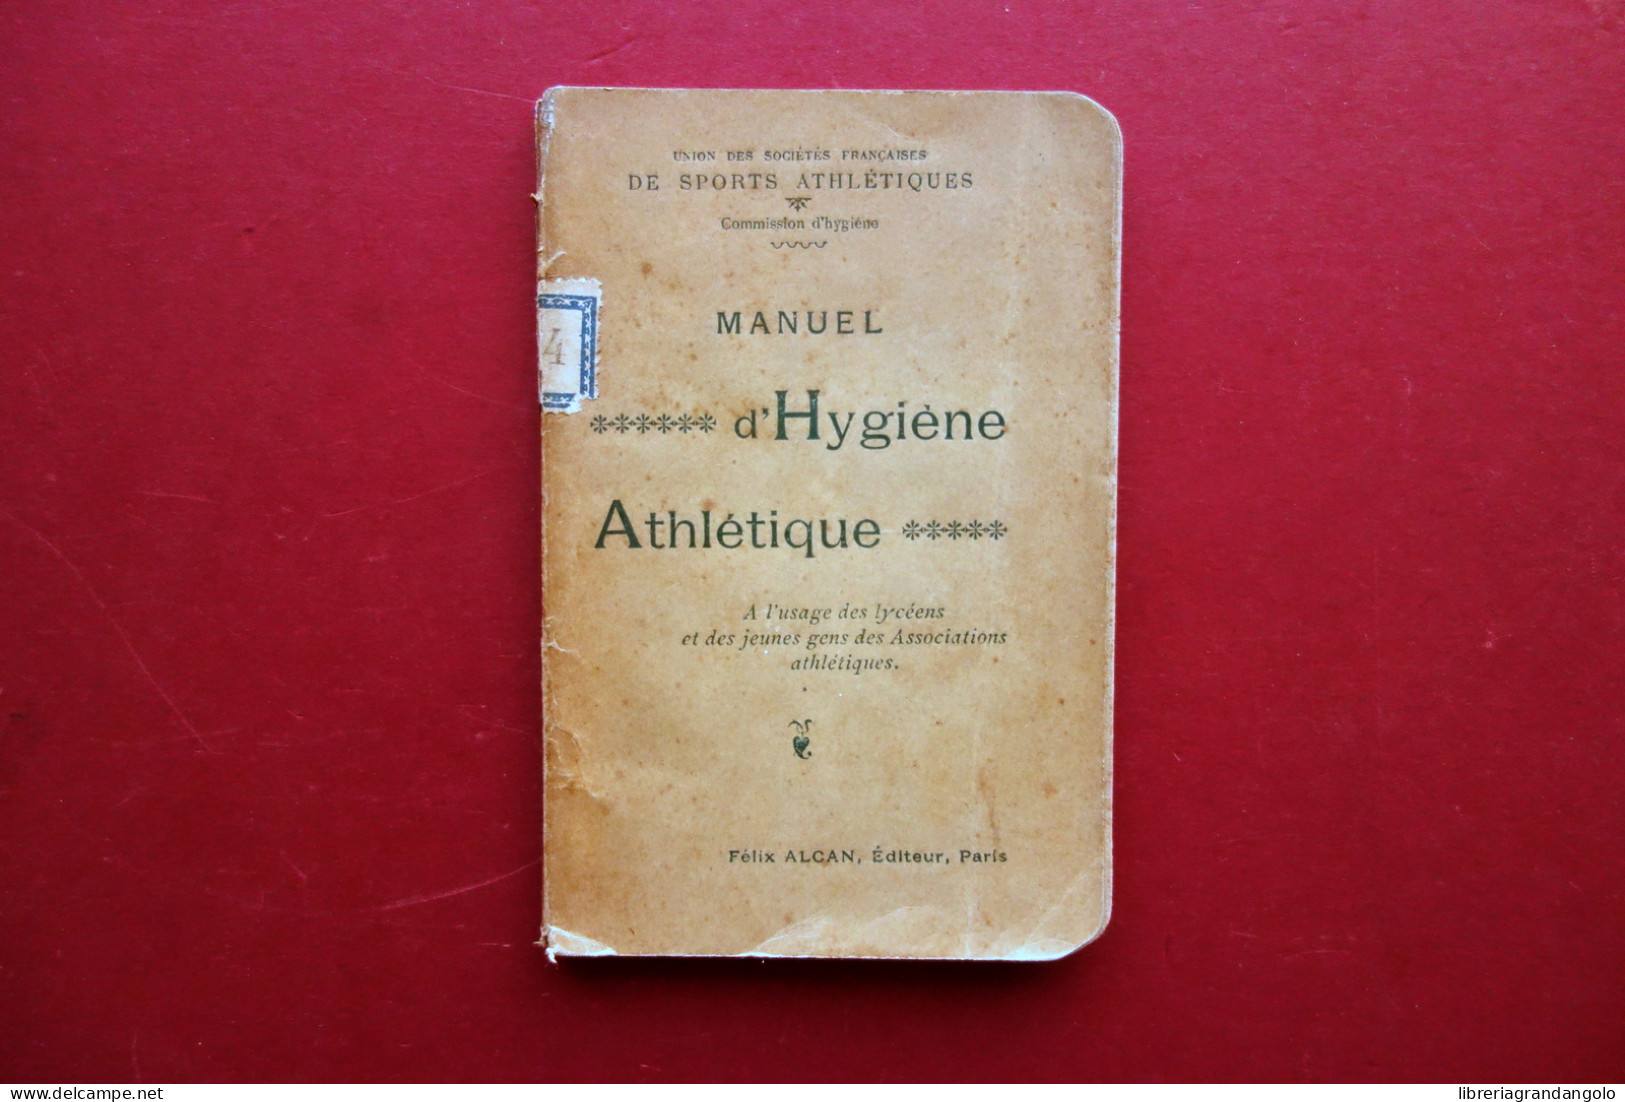 Manuel D'Hygiene Athletique A L'Usage Des Lyceens Alcan Paris 1895 Sport - Non Classés